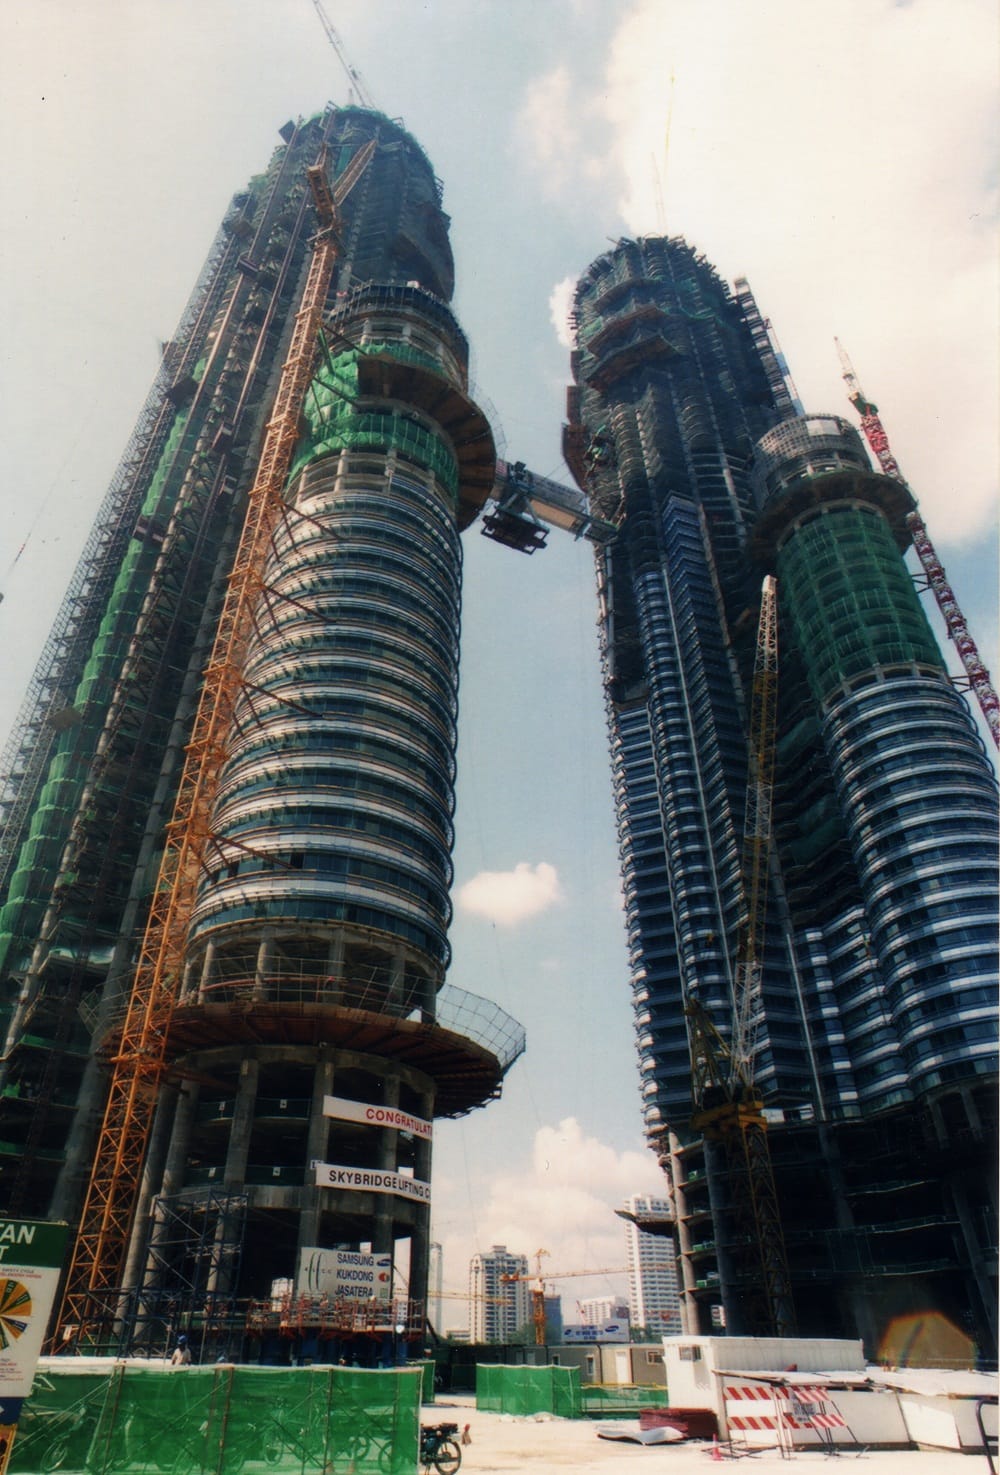 tháp đôi Petronas có gì